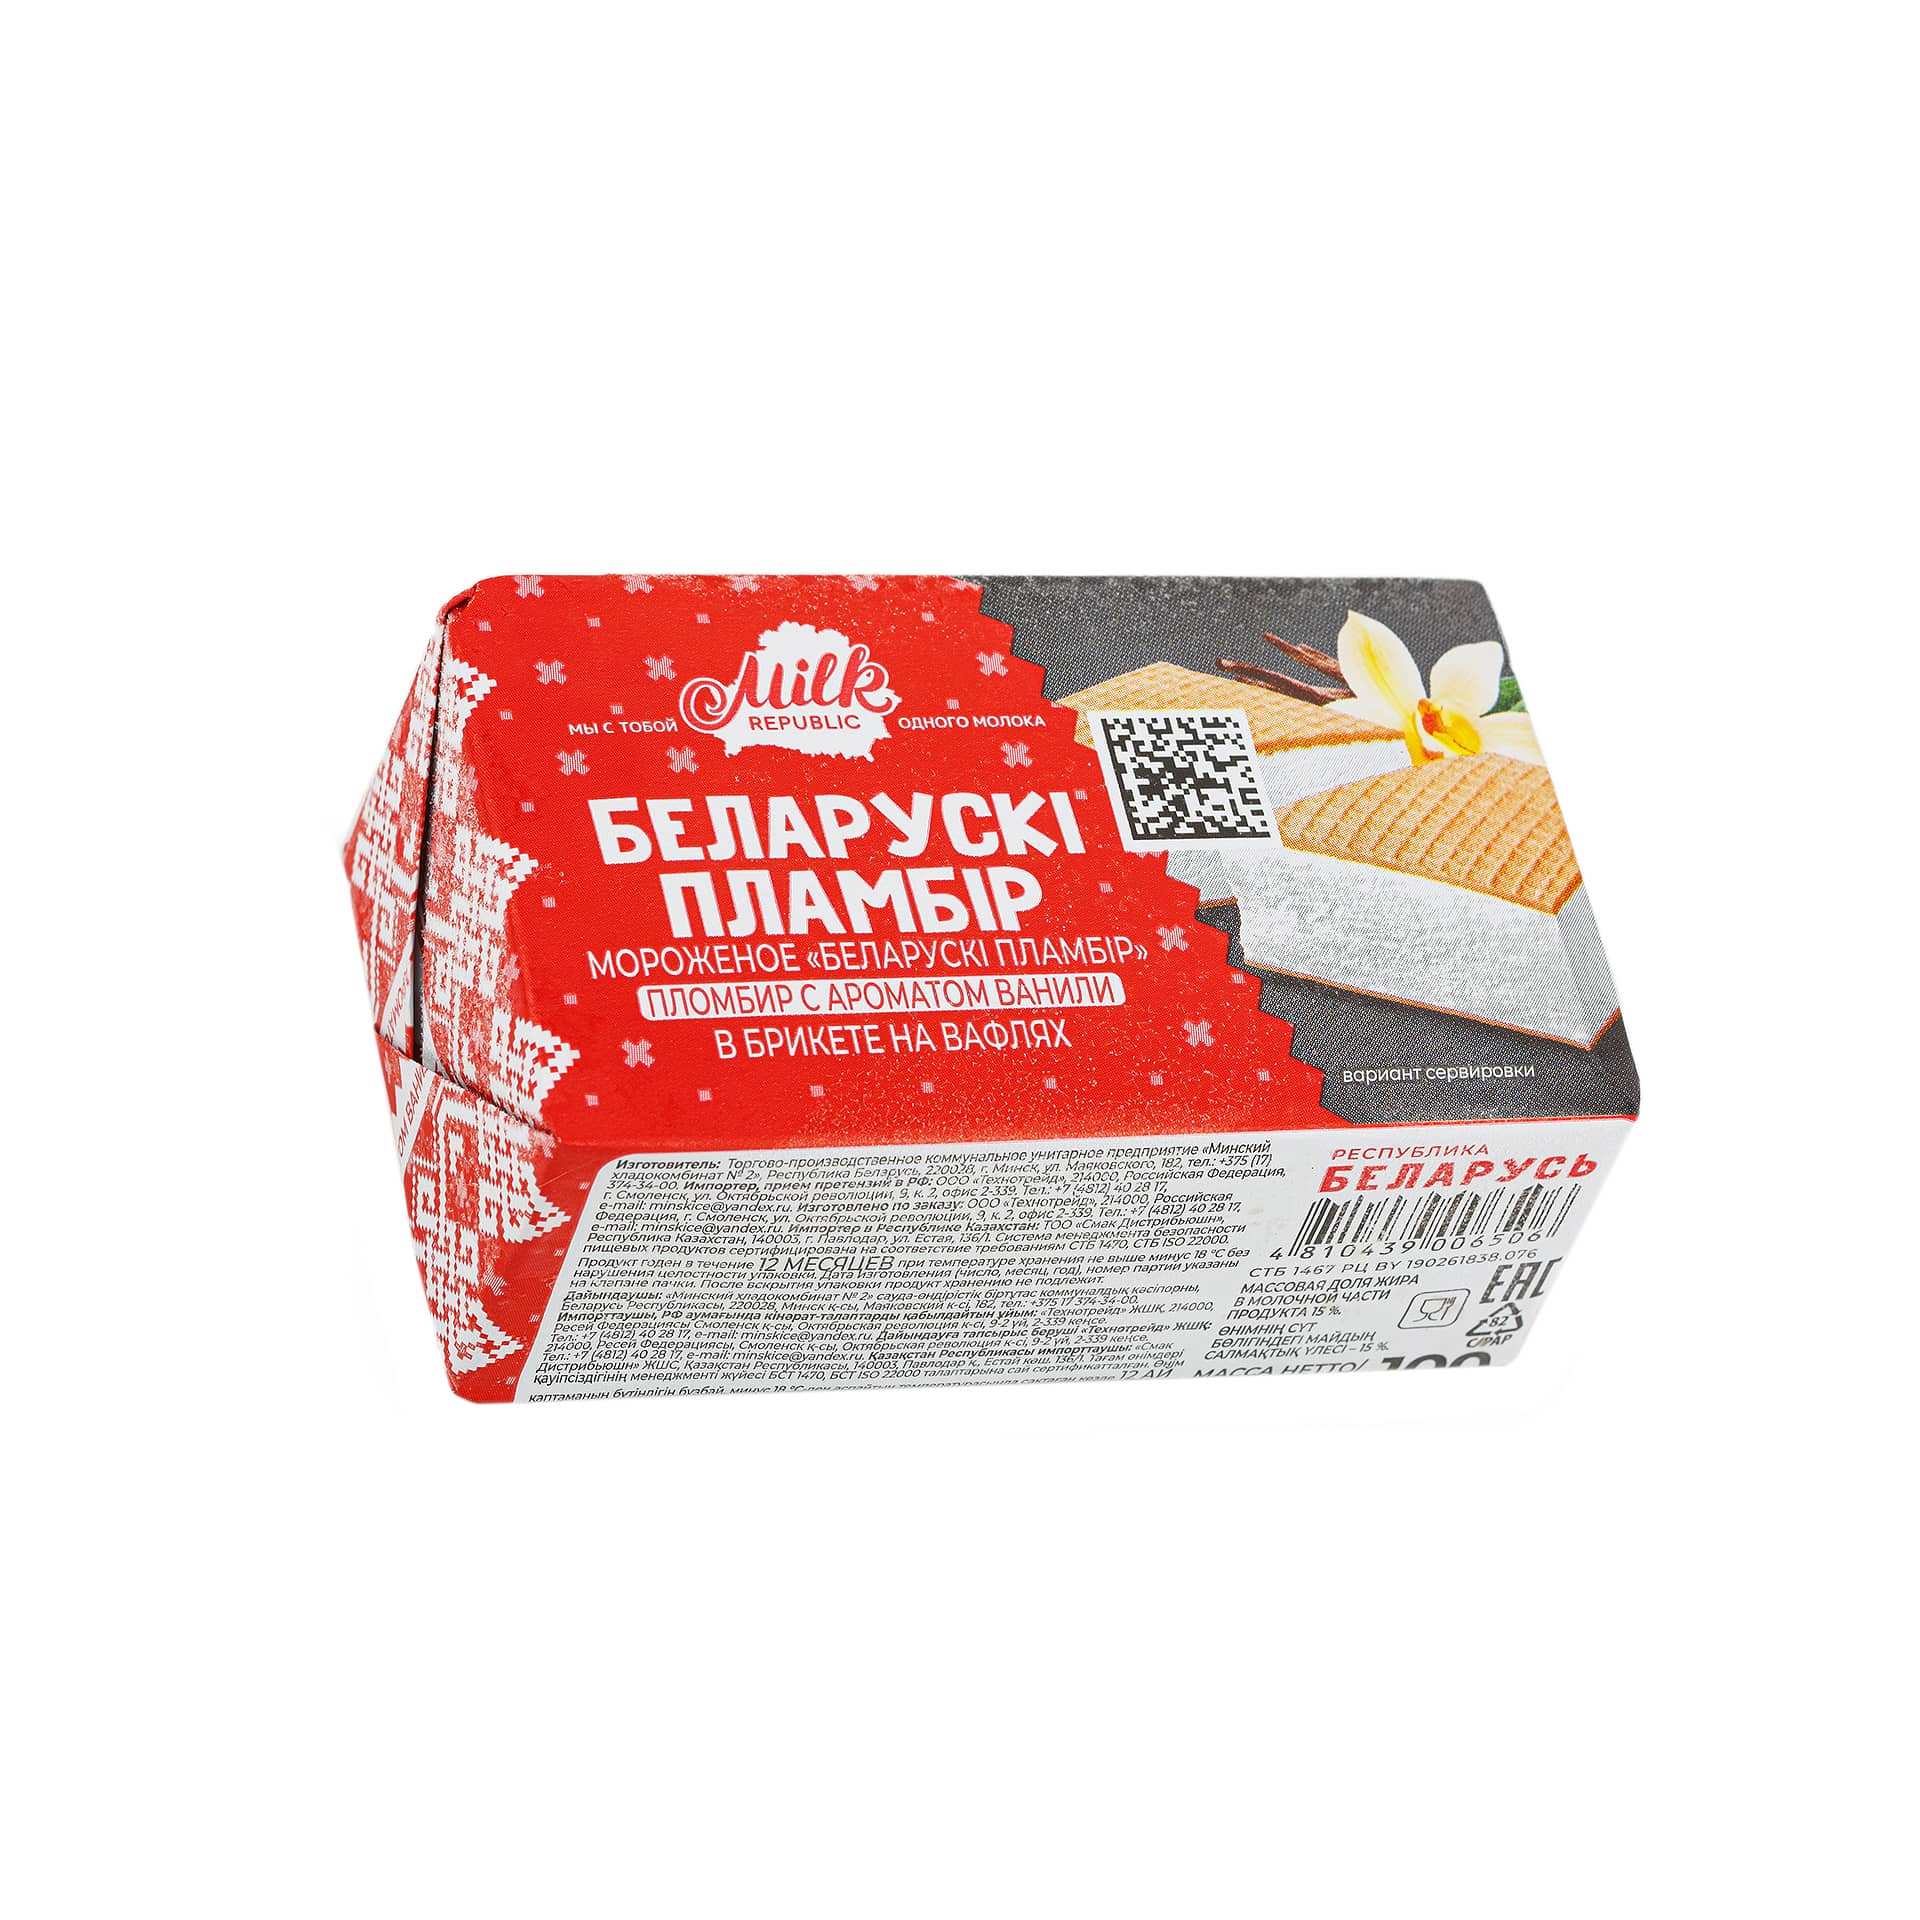 Мороженое пломбир с ароматом ванили брикет в вафлях Беларускi пламбiр 100 г 2530LED, общий вид, купить оптом с доставкой по москве и московской области, недорого, низкая цена